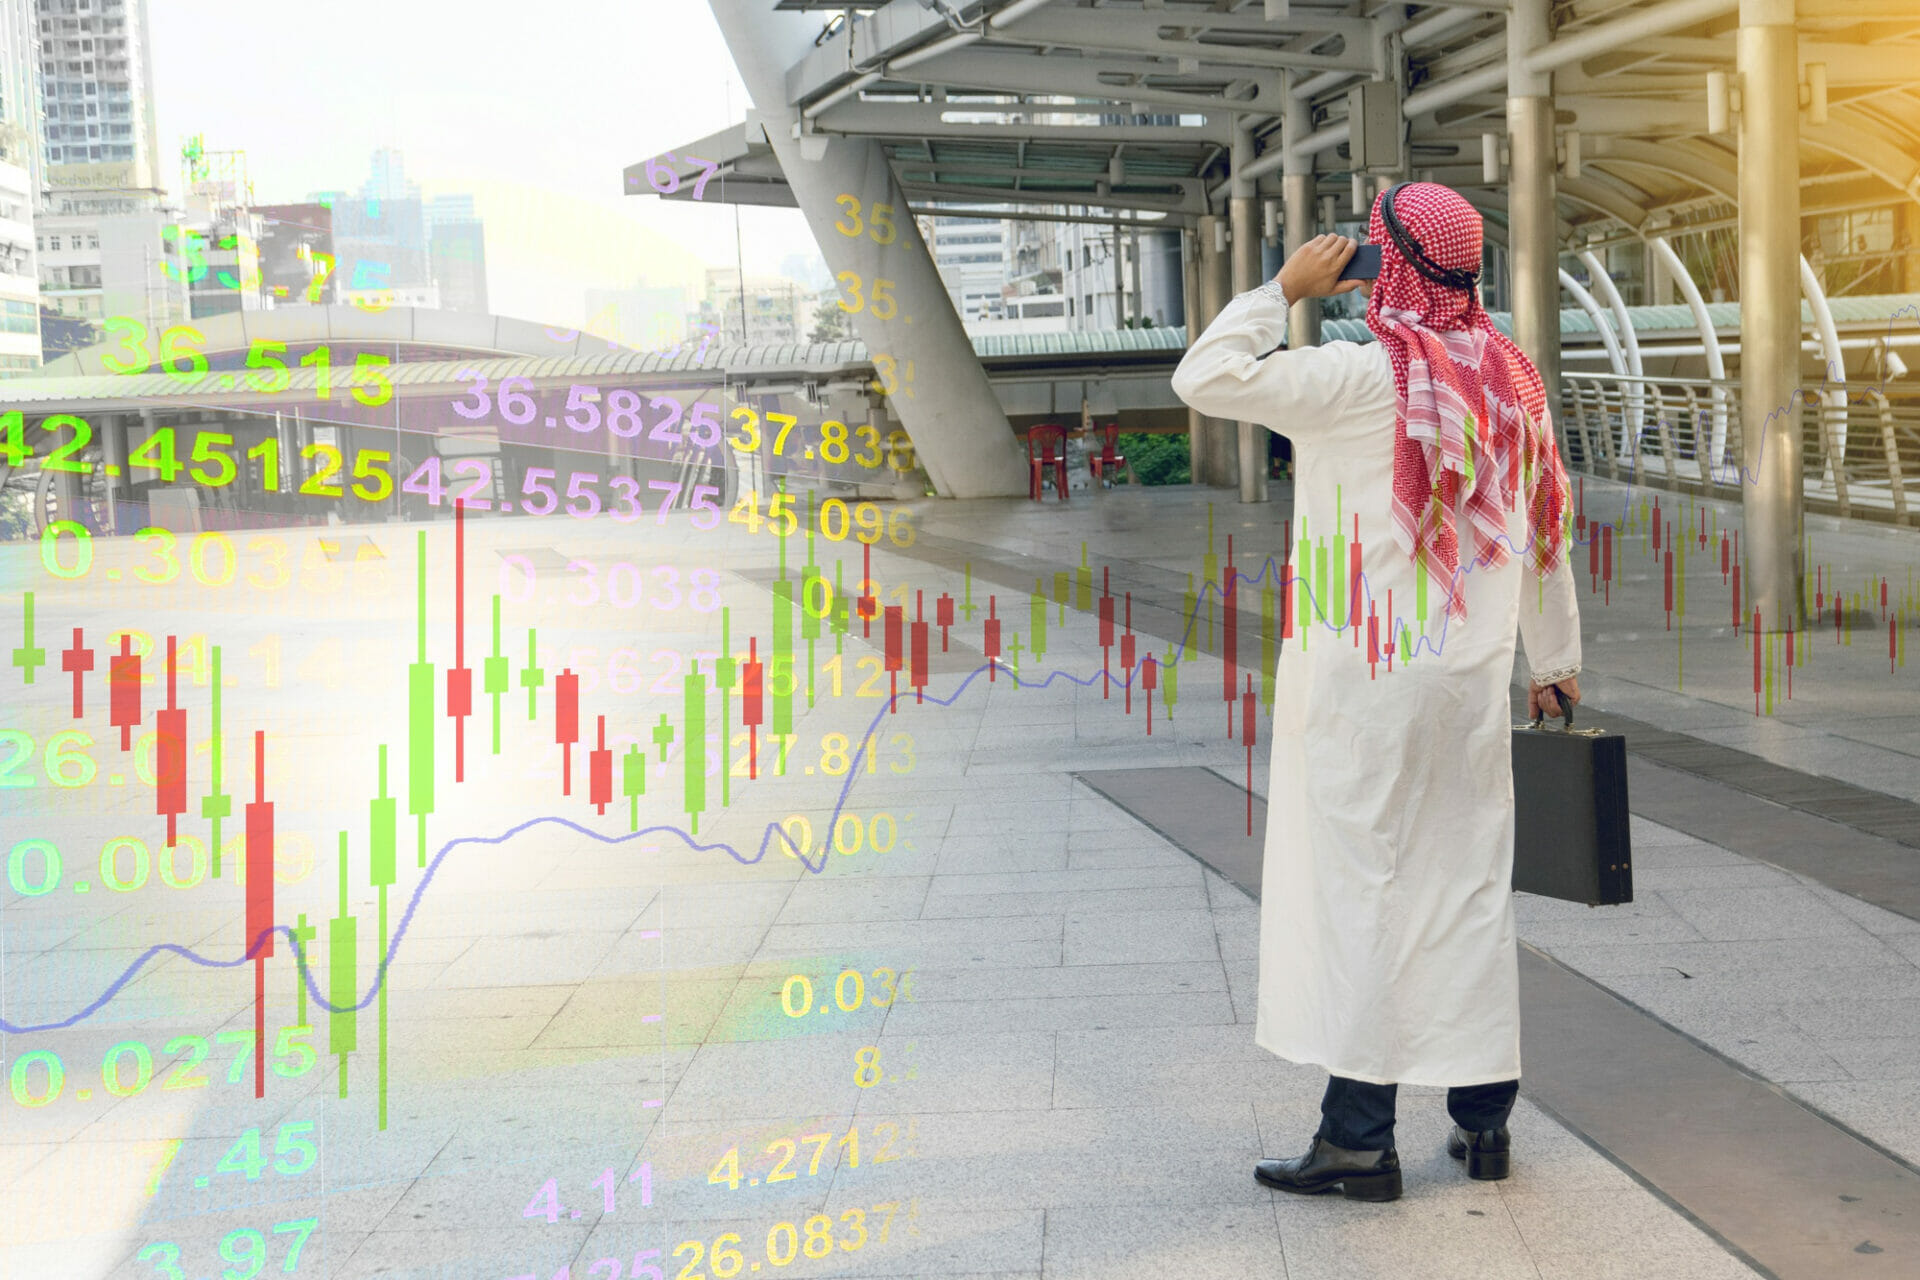 سوق دبي المالي يحقق زيادة 30% في صافي أرباح الربع الأول بسبب اجتذاب مستثمرين جدد